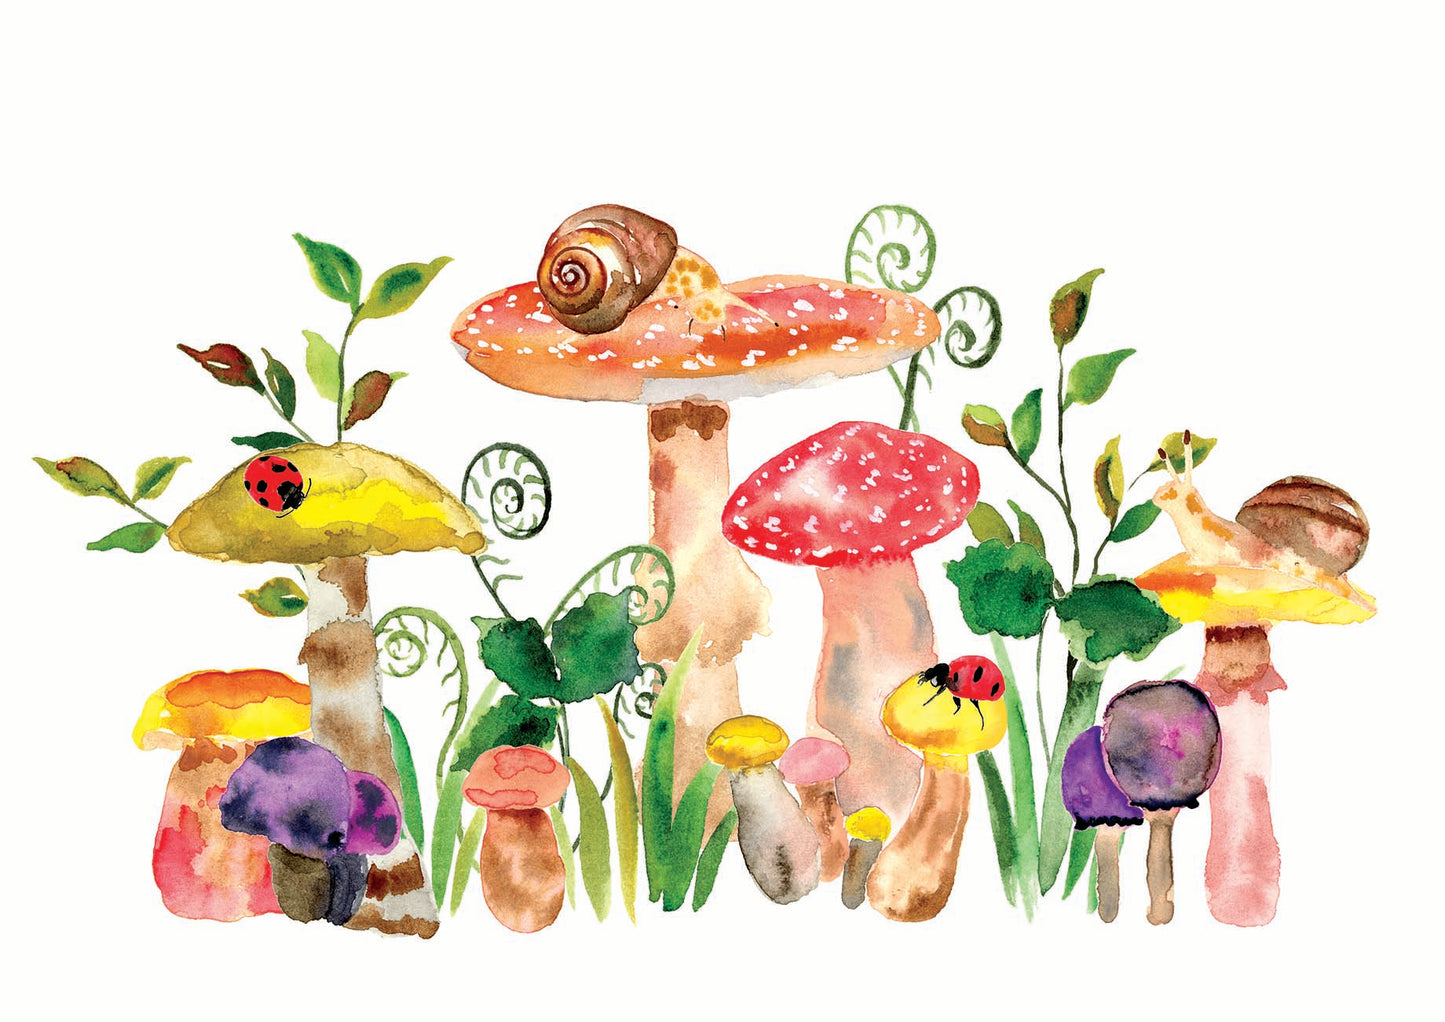 Mushroom Wonder - Limited Edition